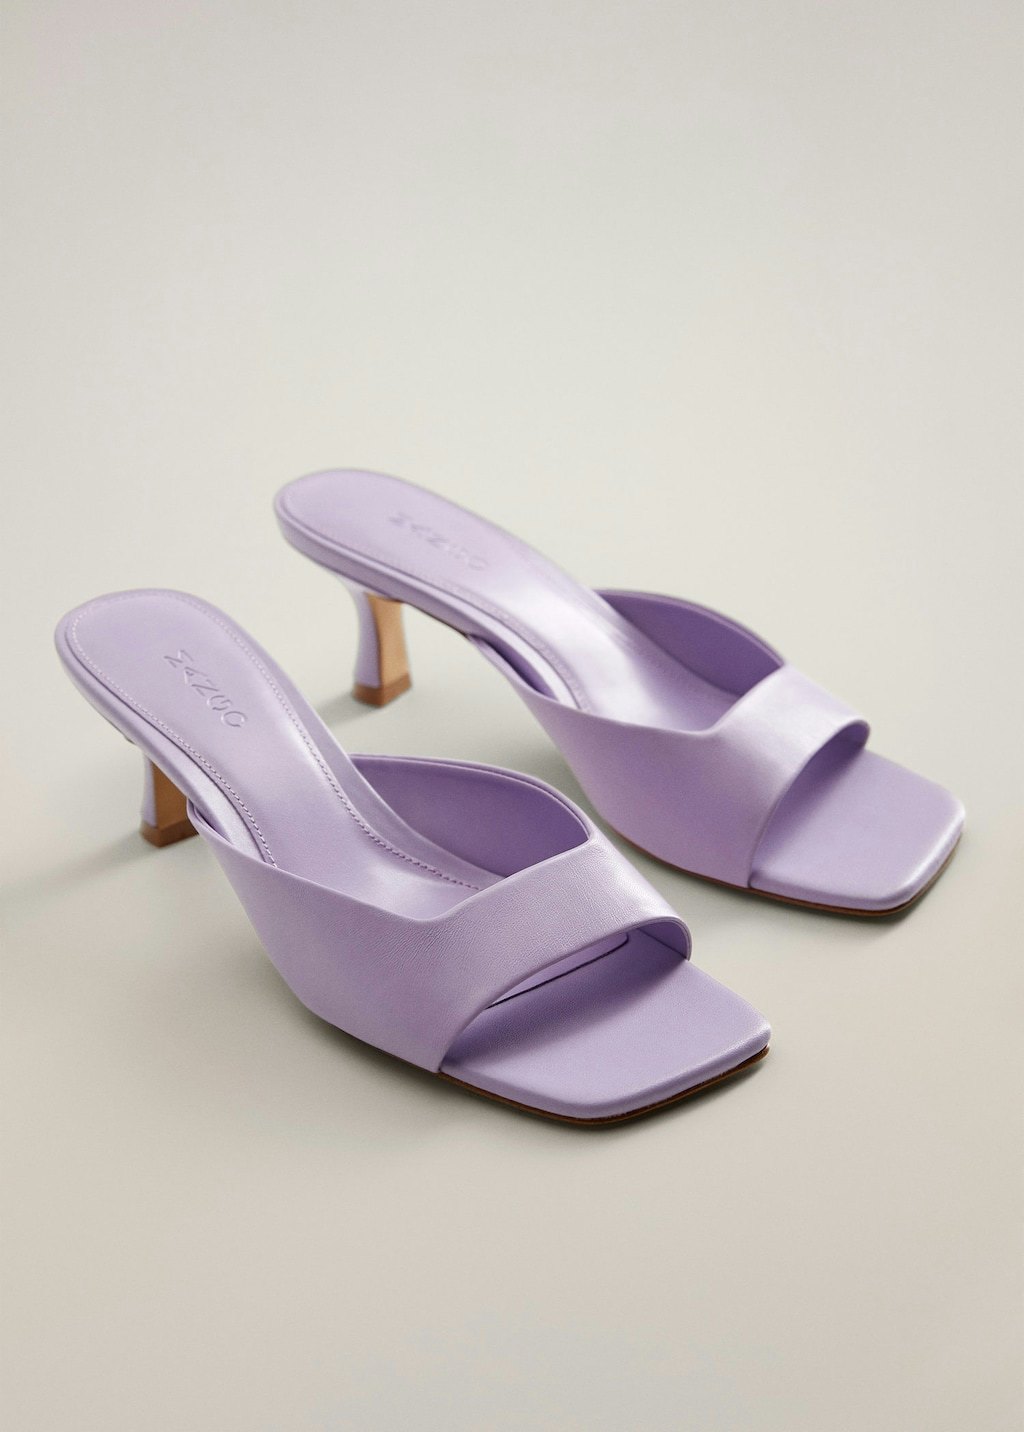 mango sandals heels